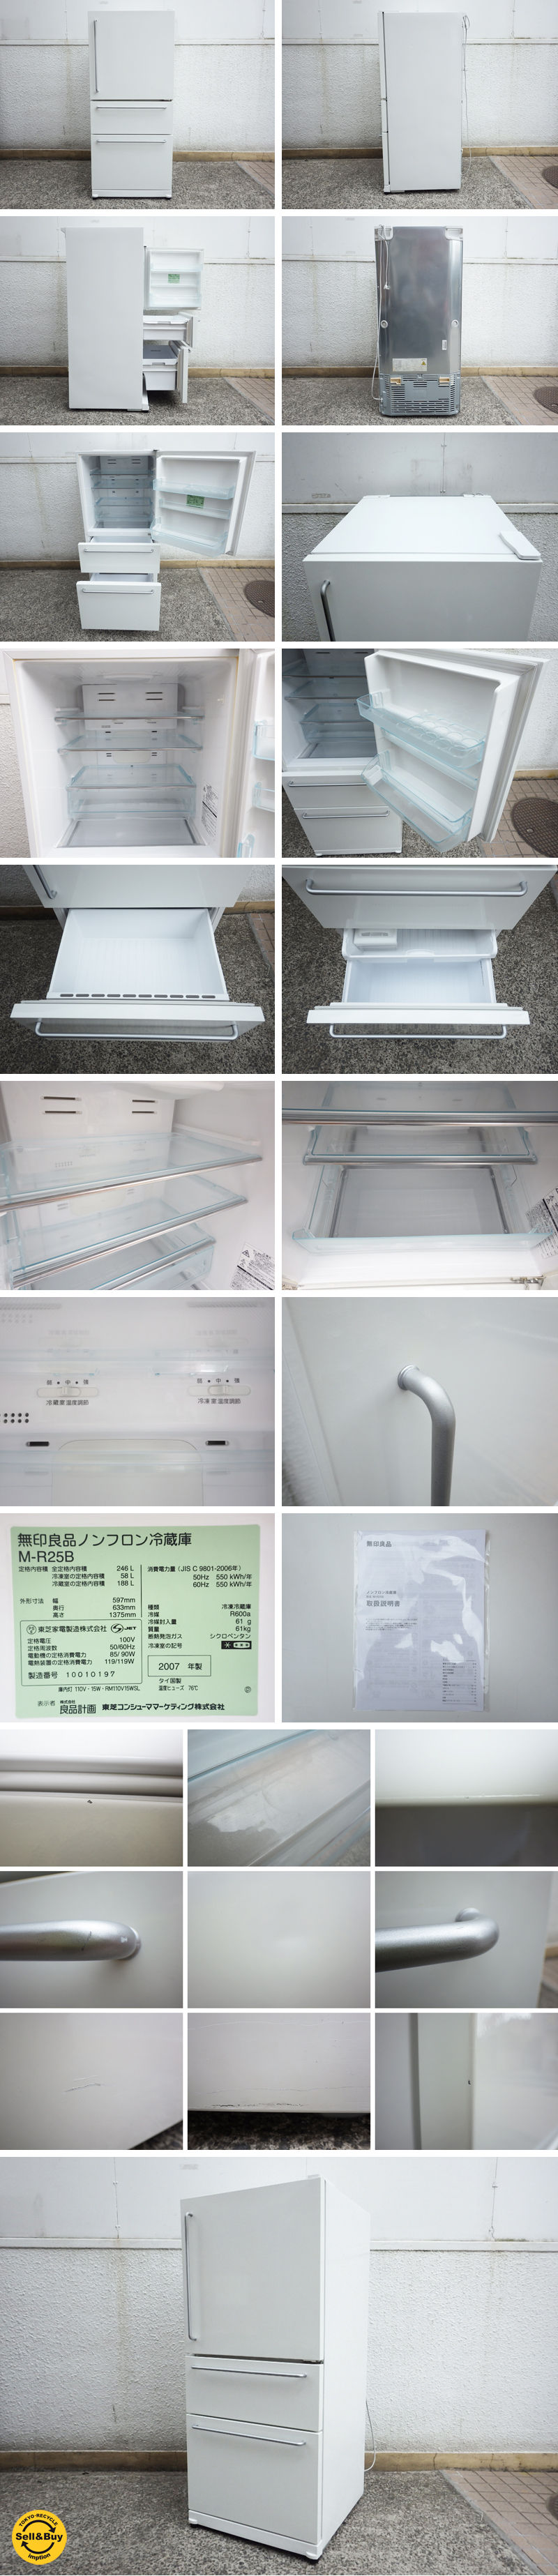 無印良品 / MUJI 『 246L 冷凍冷蔵庫 M-R25B 』 深澤直人 デザイン ...